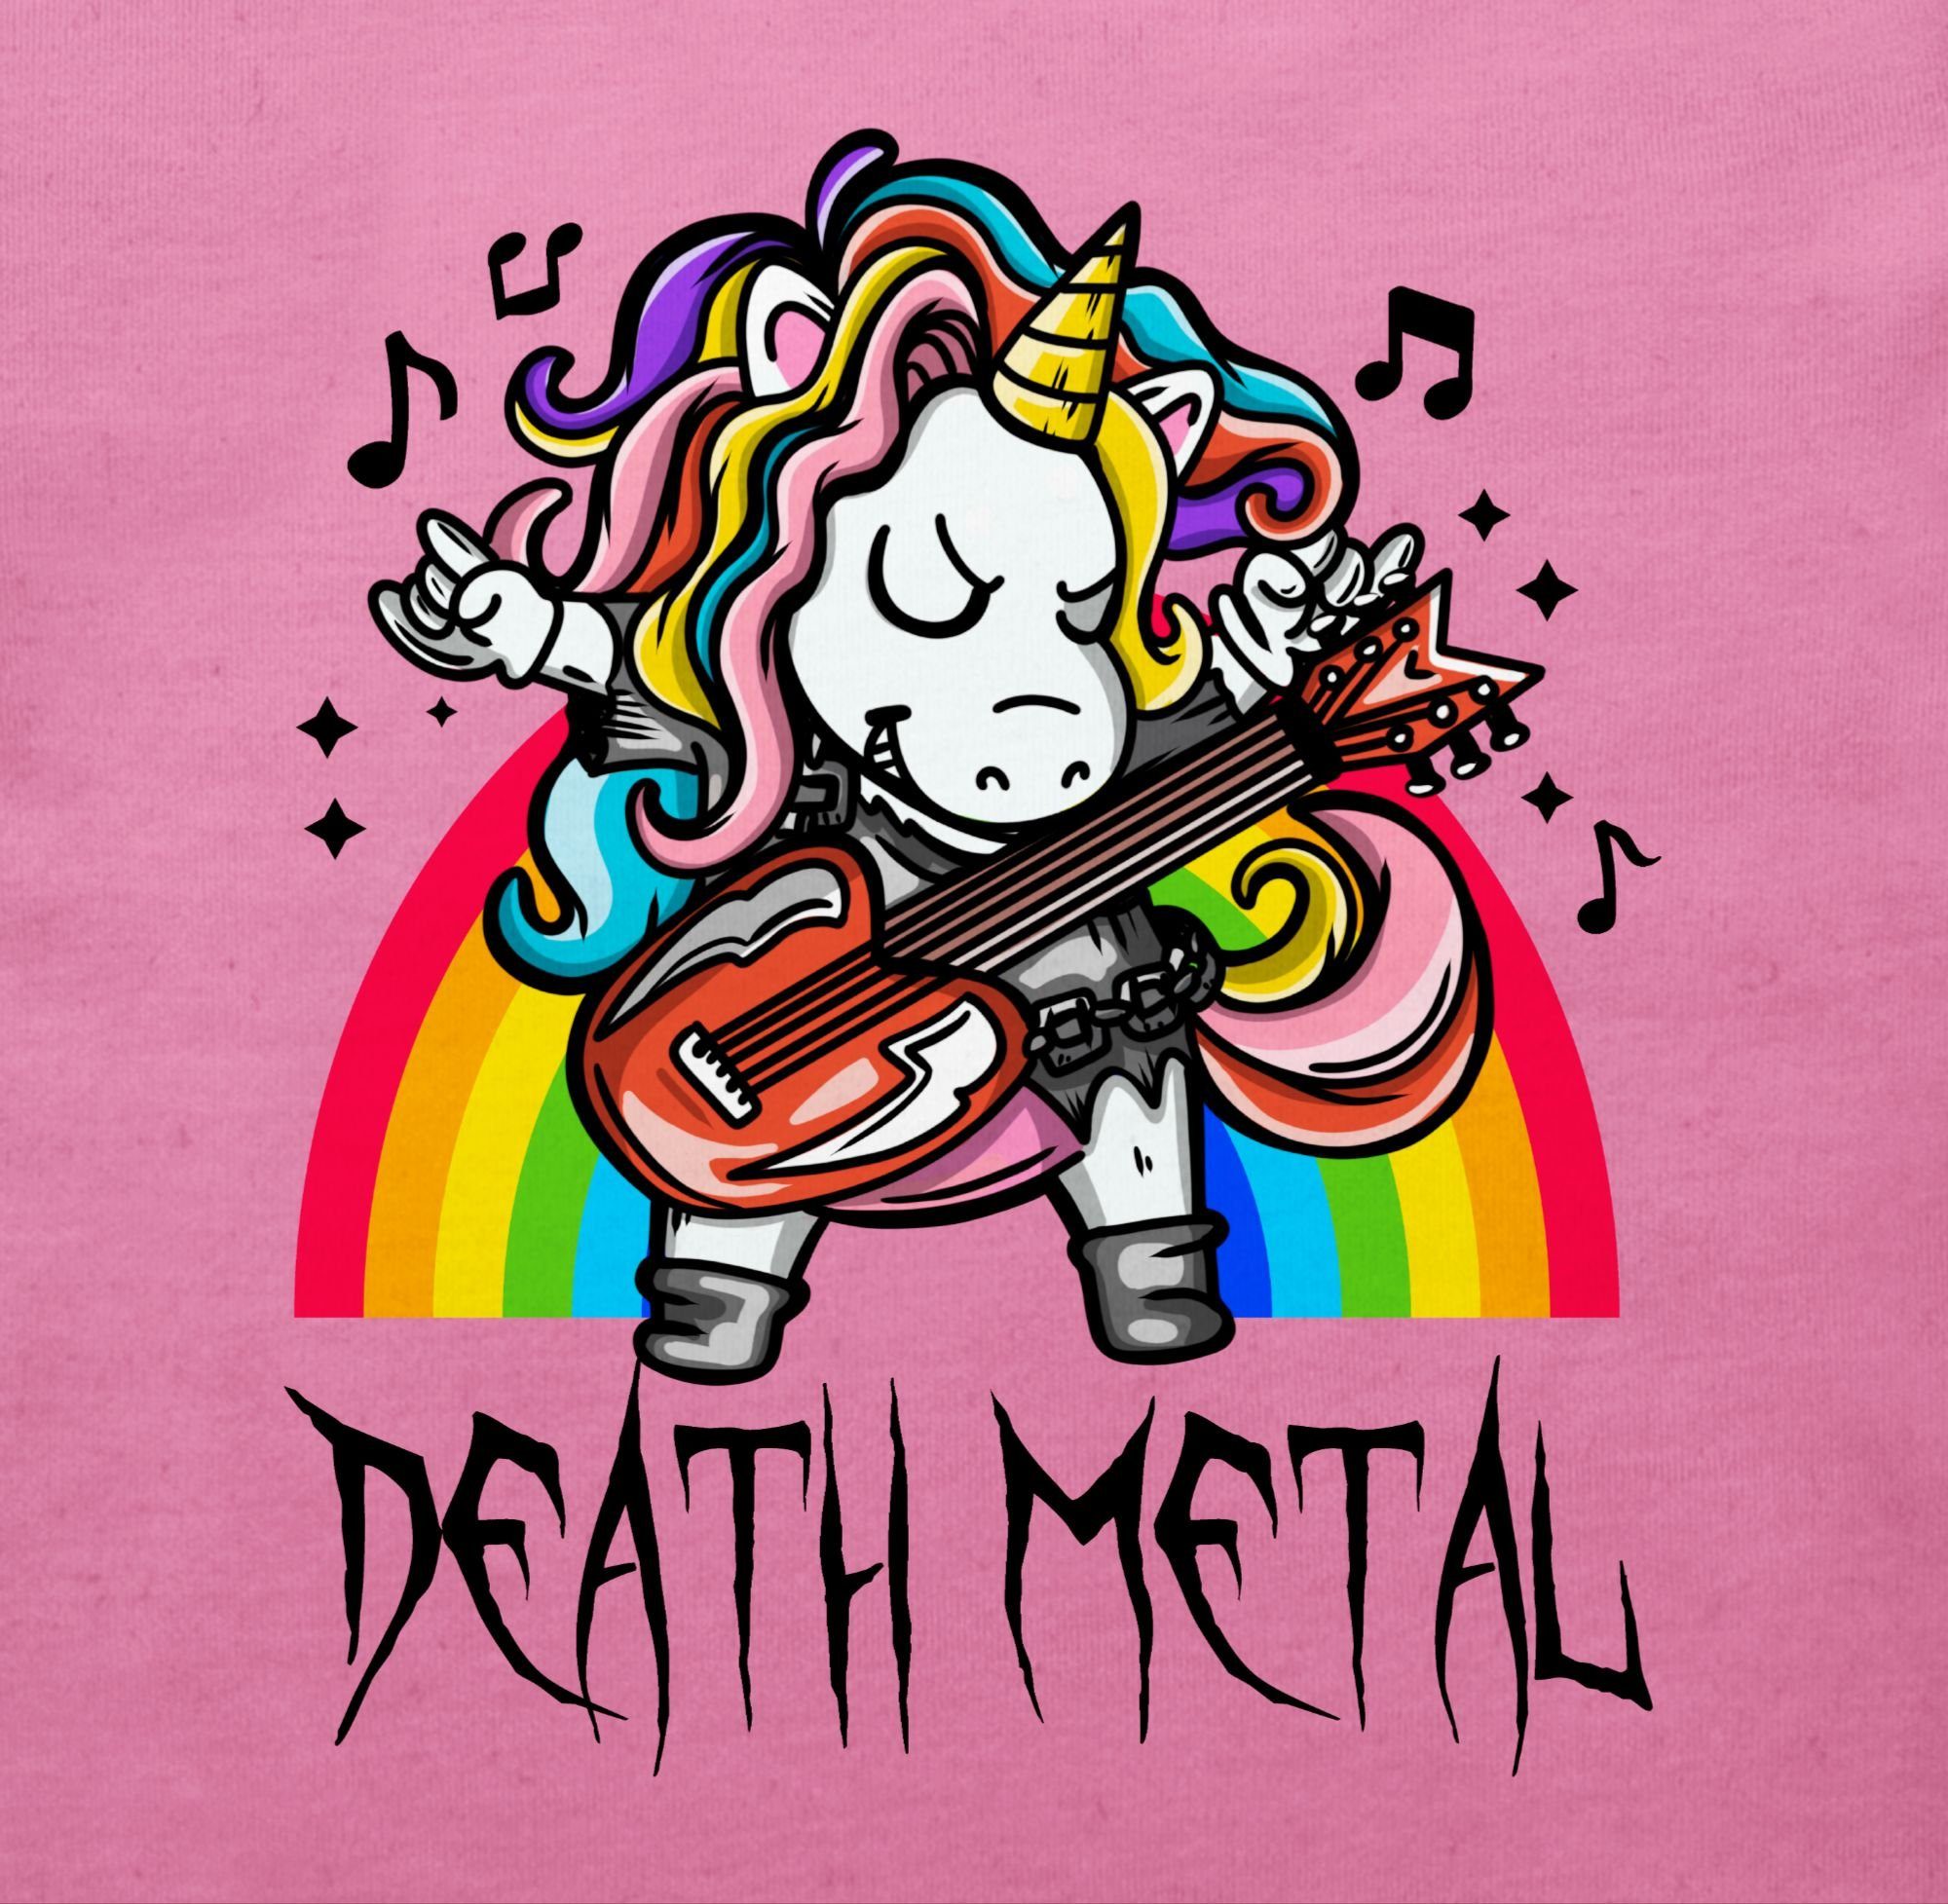 T-Shirt Metal Death Baby - Sprüche Einhorn Unicorn 1 Pink Shirtracer